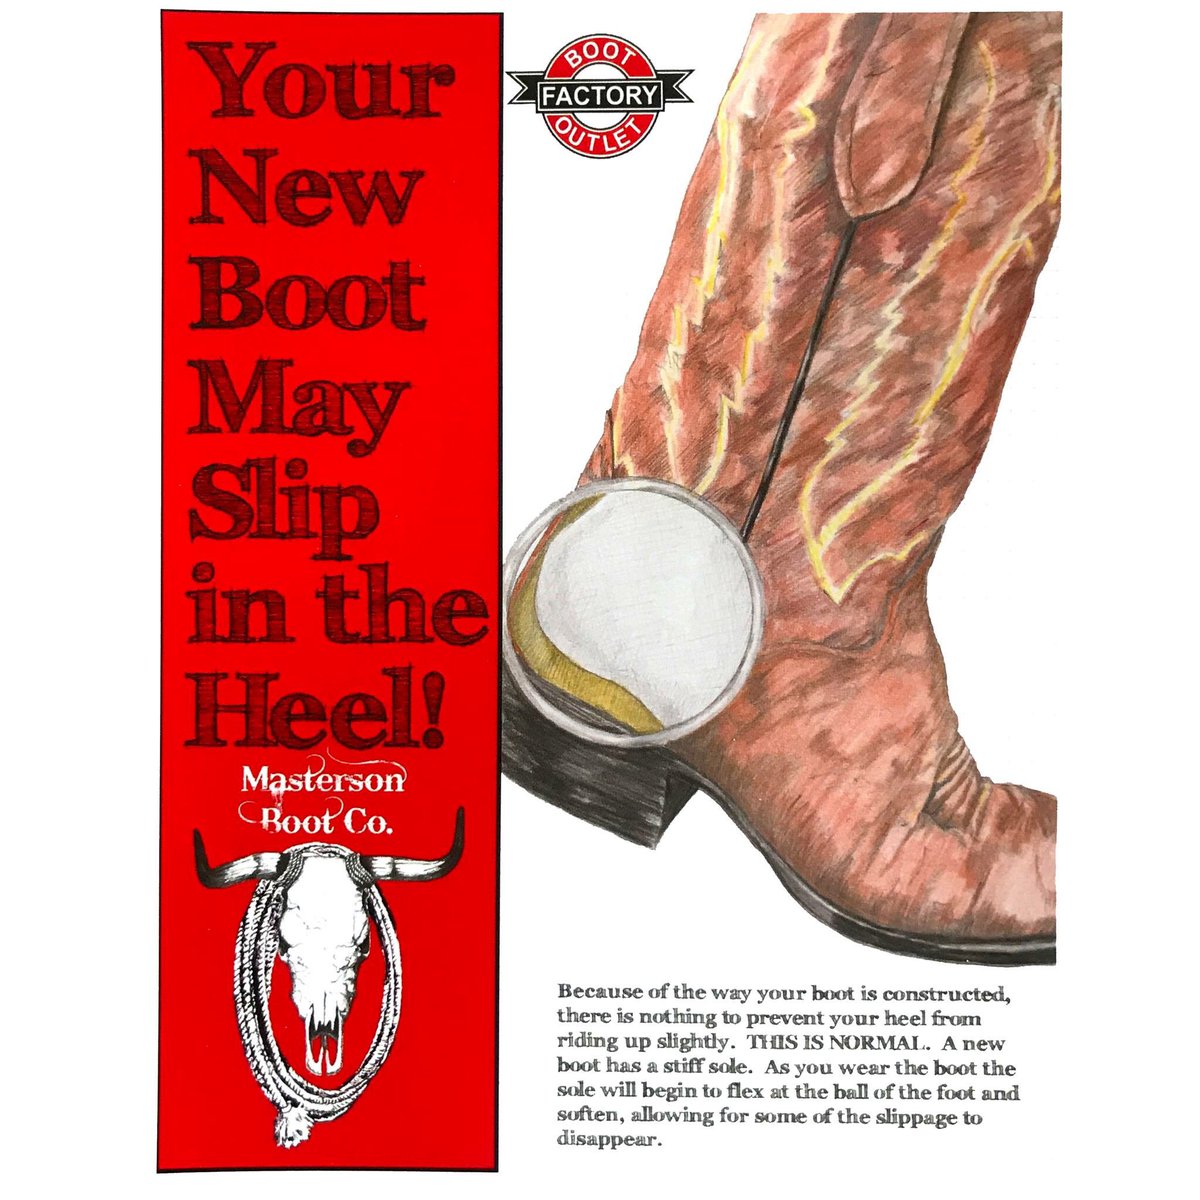 cowboy boots heel slip